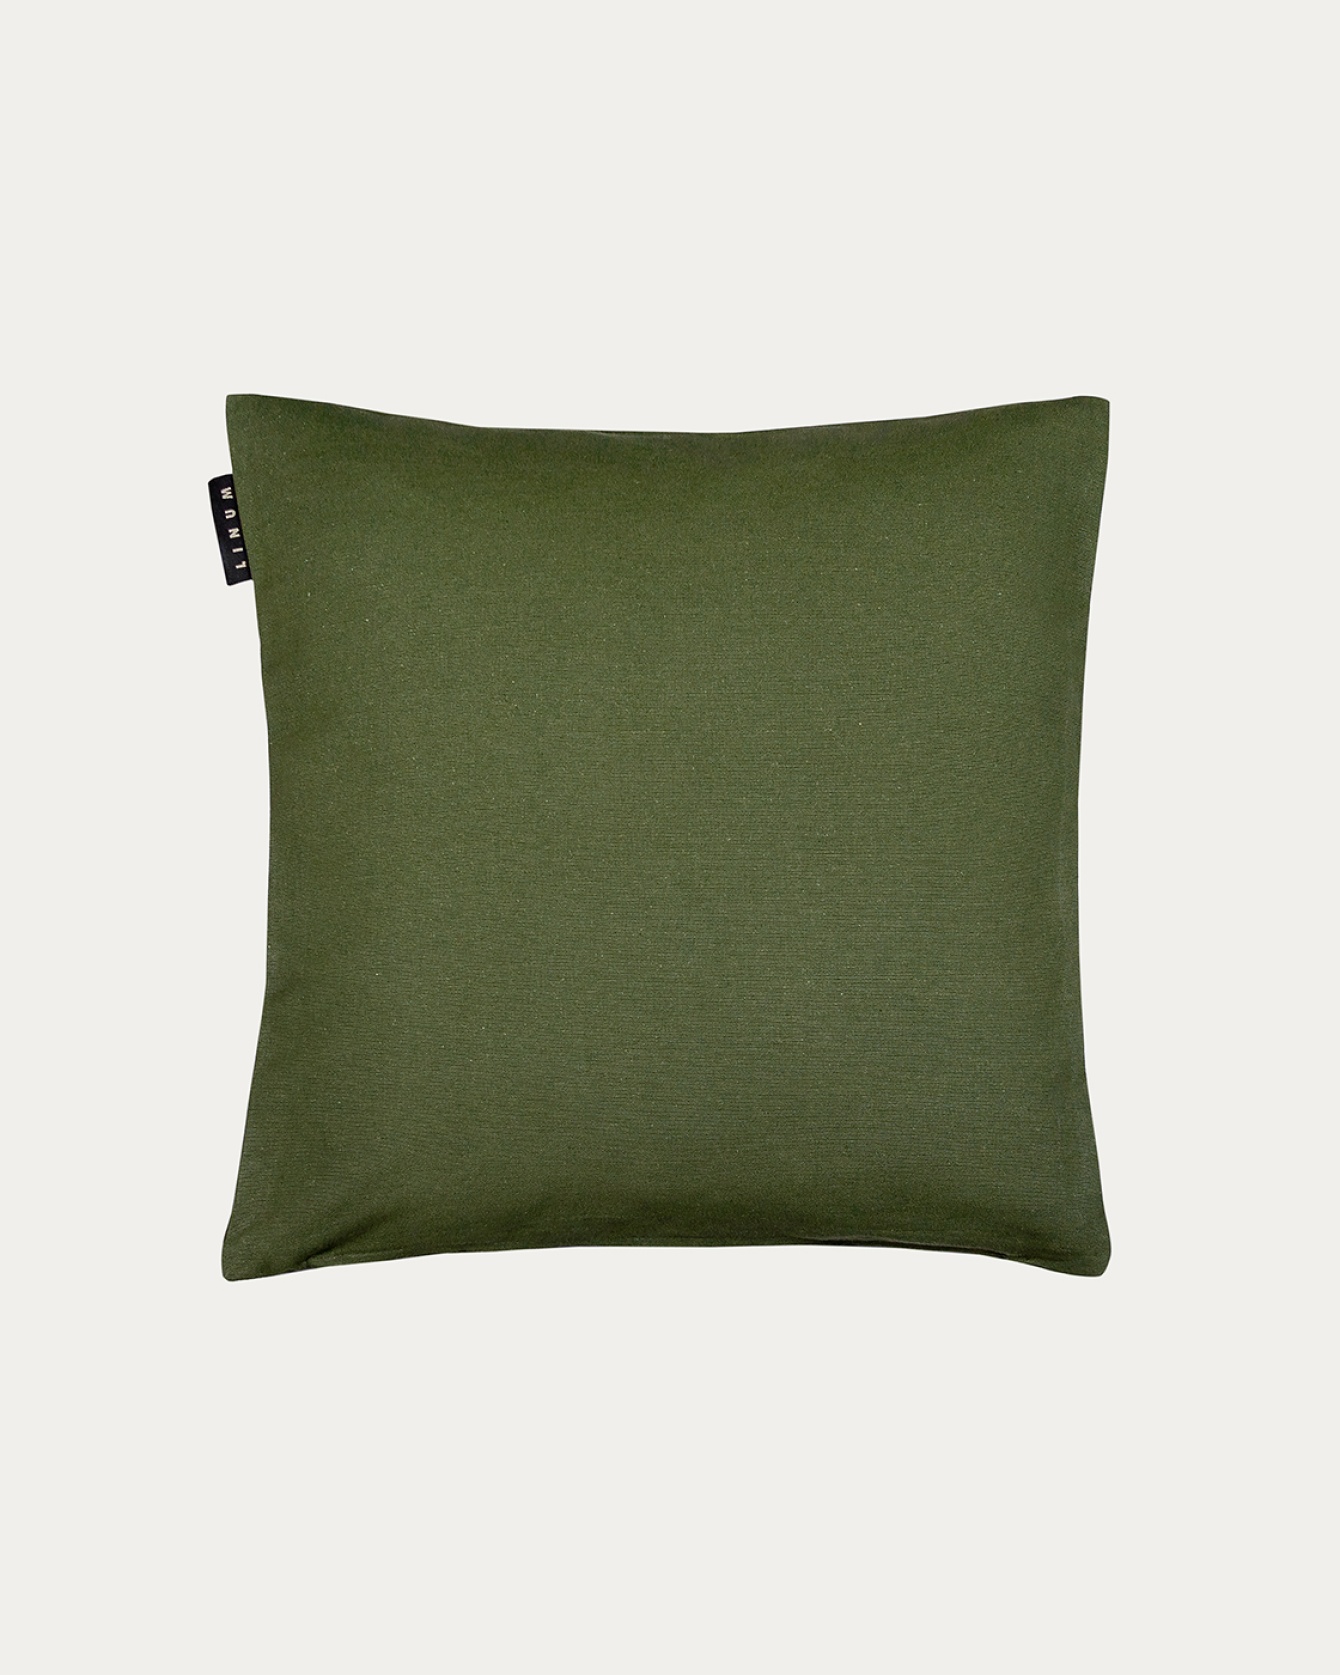 Image du produit housse de coussin ANNABELL vert olive foncé en coton doux de LINUM DESIGN. Taille 40 x 40 cm.